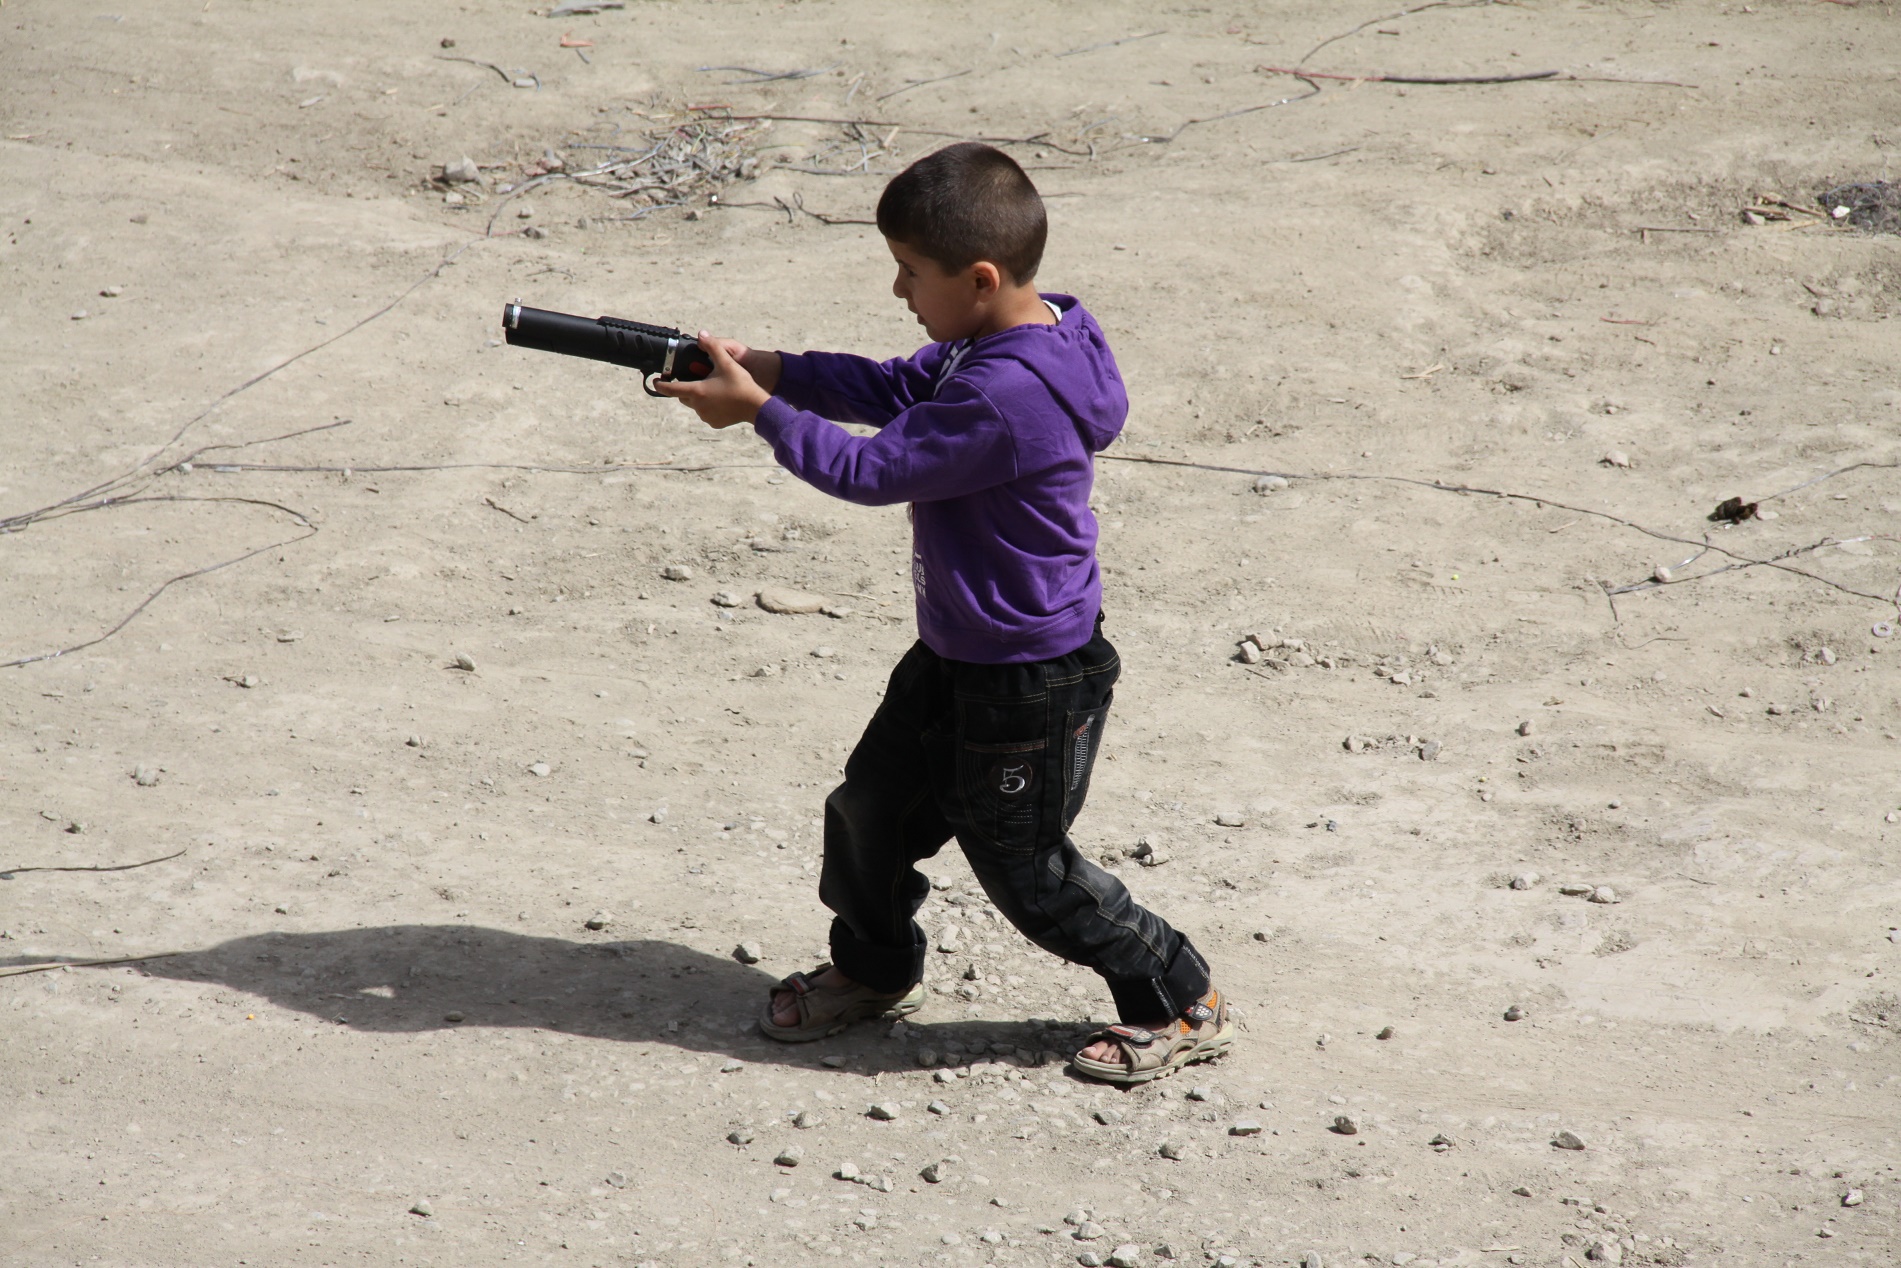 Jovem brinca com um arma de brinquedo no Afeganistão. Acabar com a banalização da violência é dos grandes desafios dos Objetivos do Desenvolvimento Sustentável (ODS)